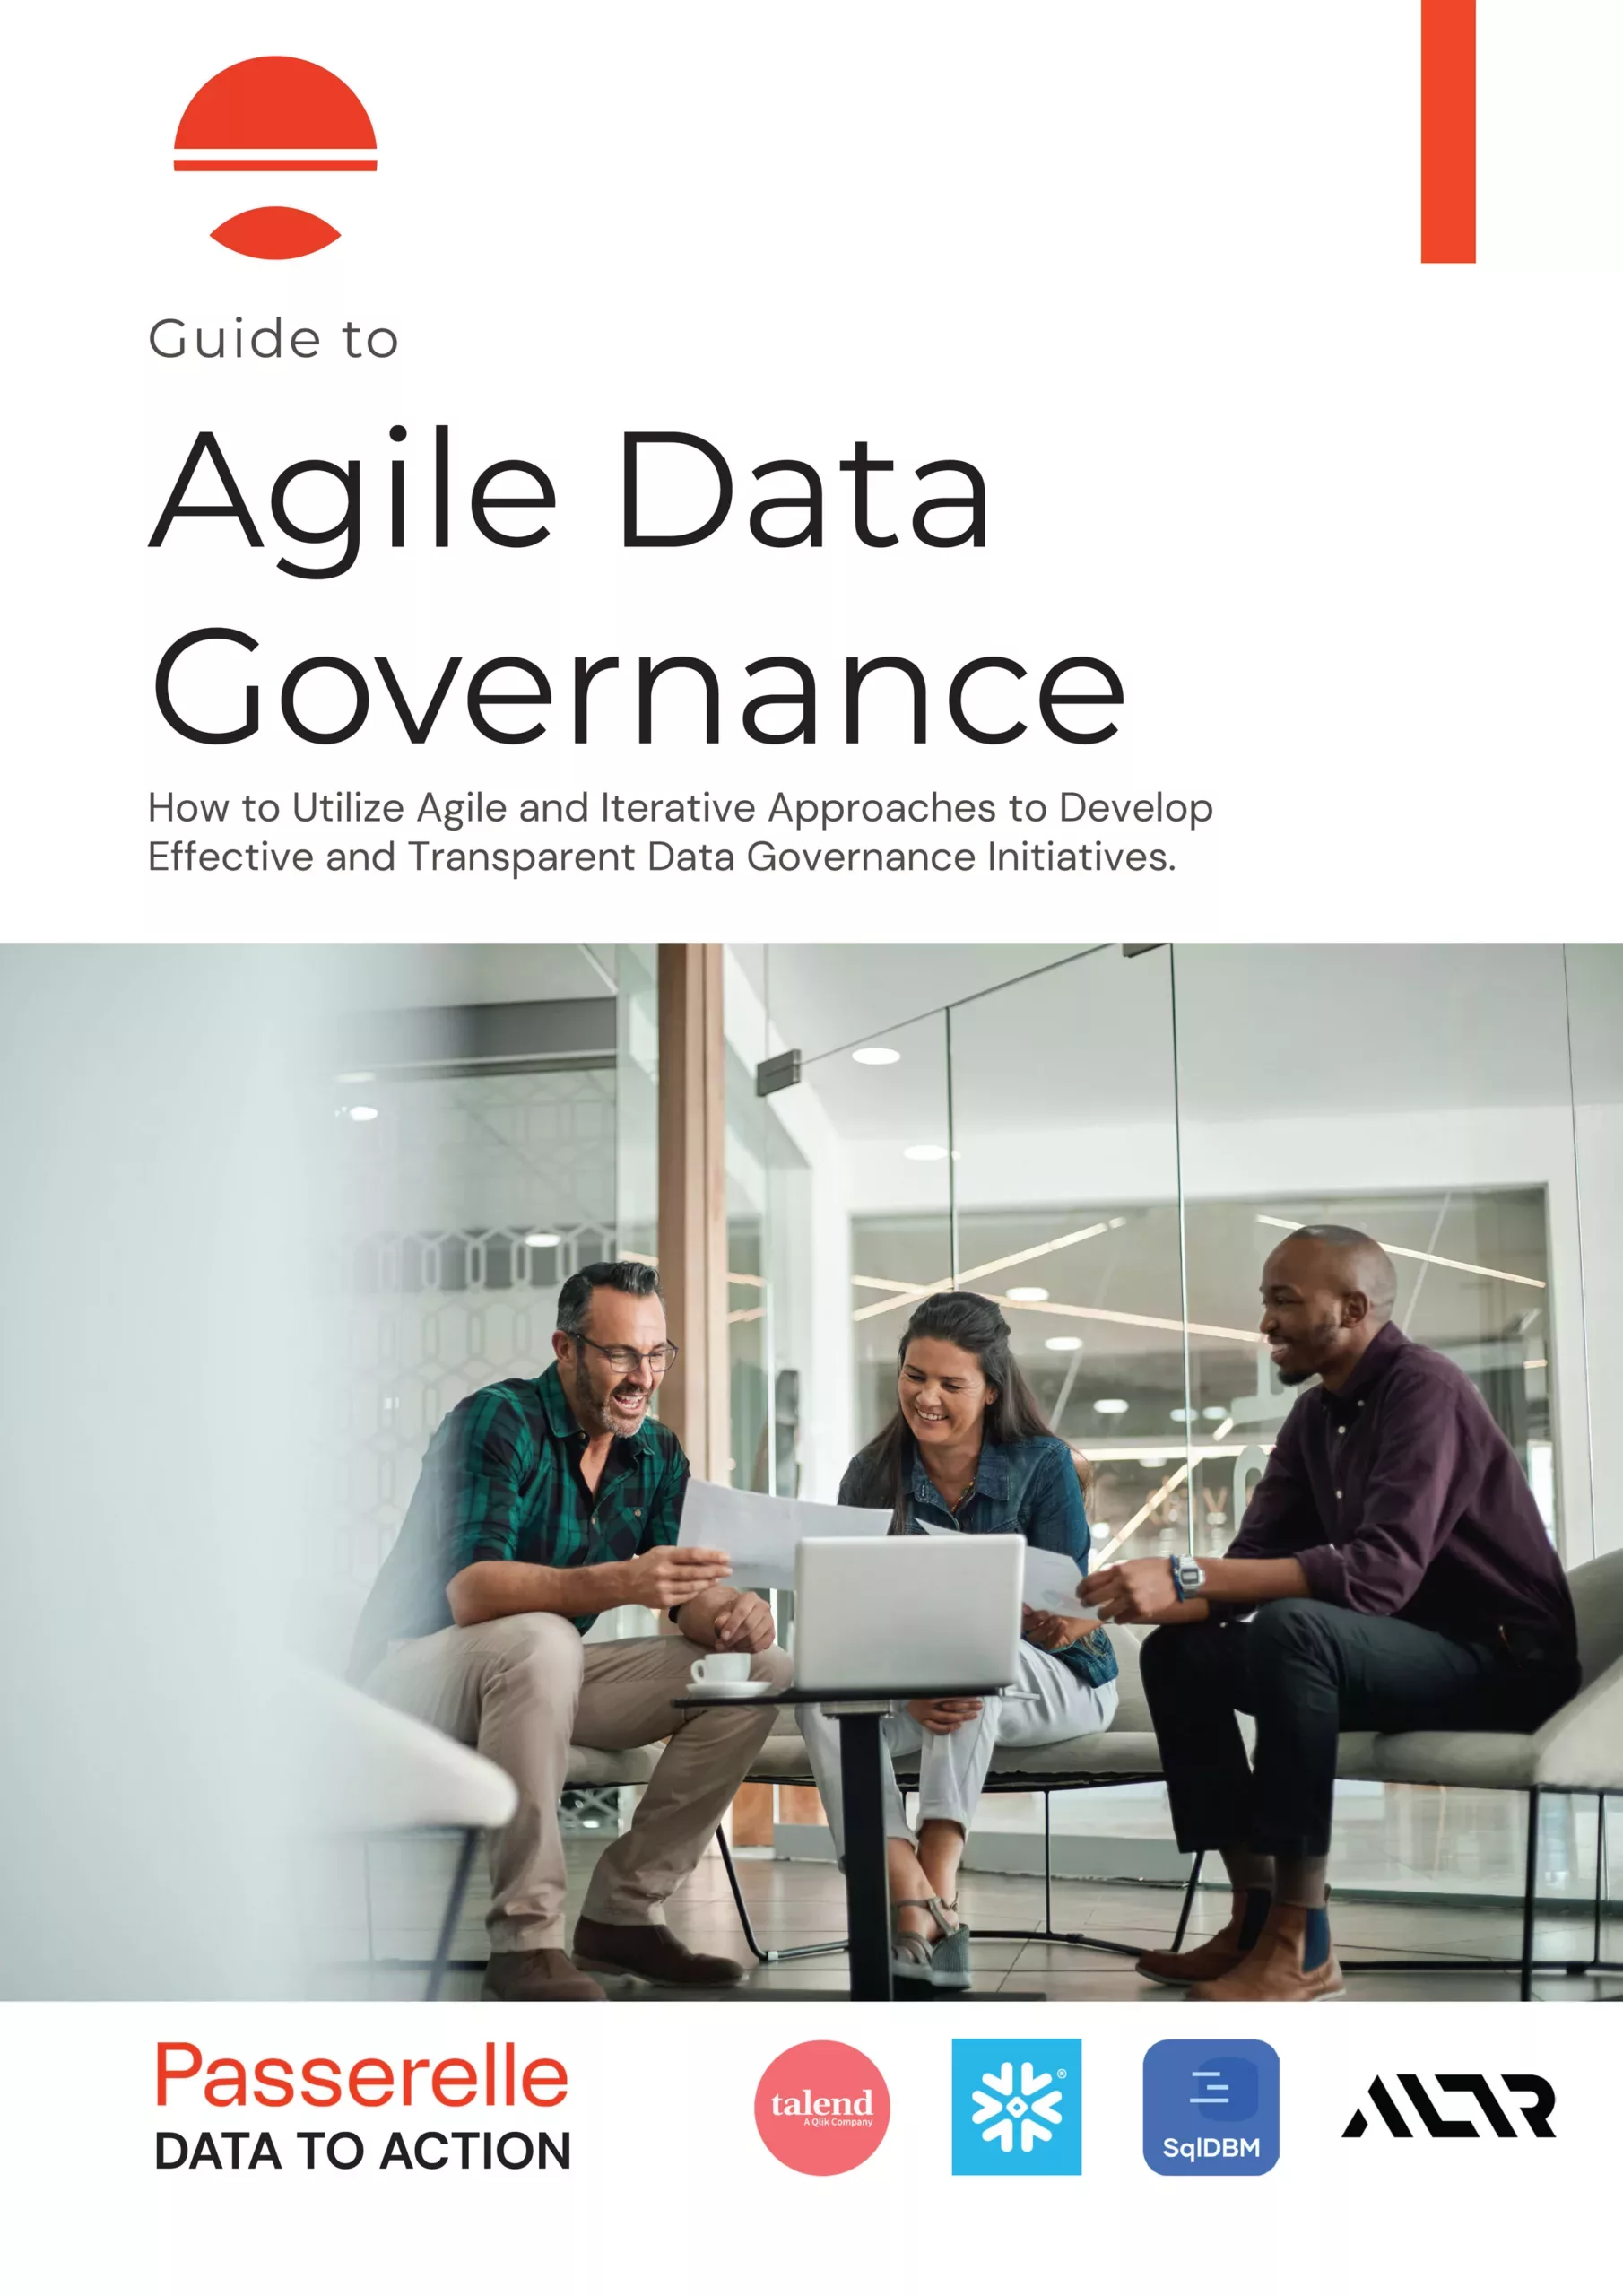 Agile-Data-Governance-Guide-for-web